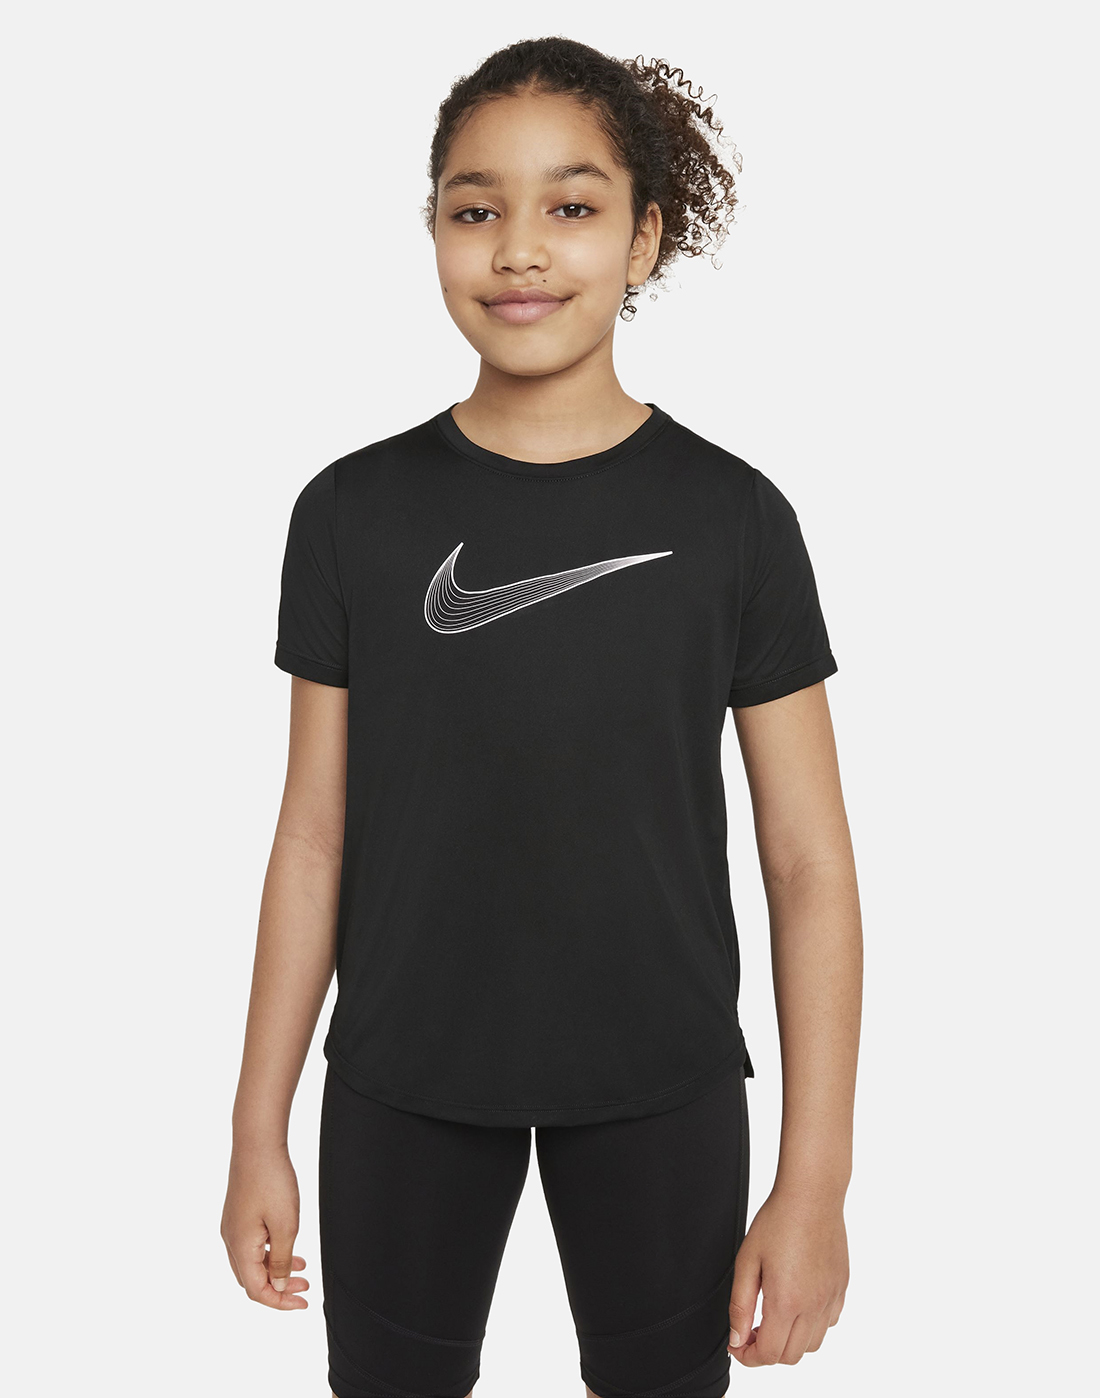 Nike Older Girls One T-Shirt - Black | Life Style Sports UK